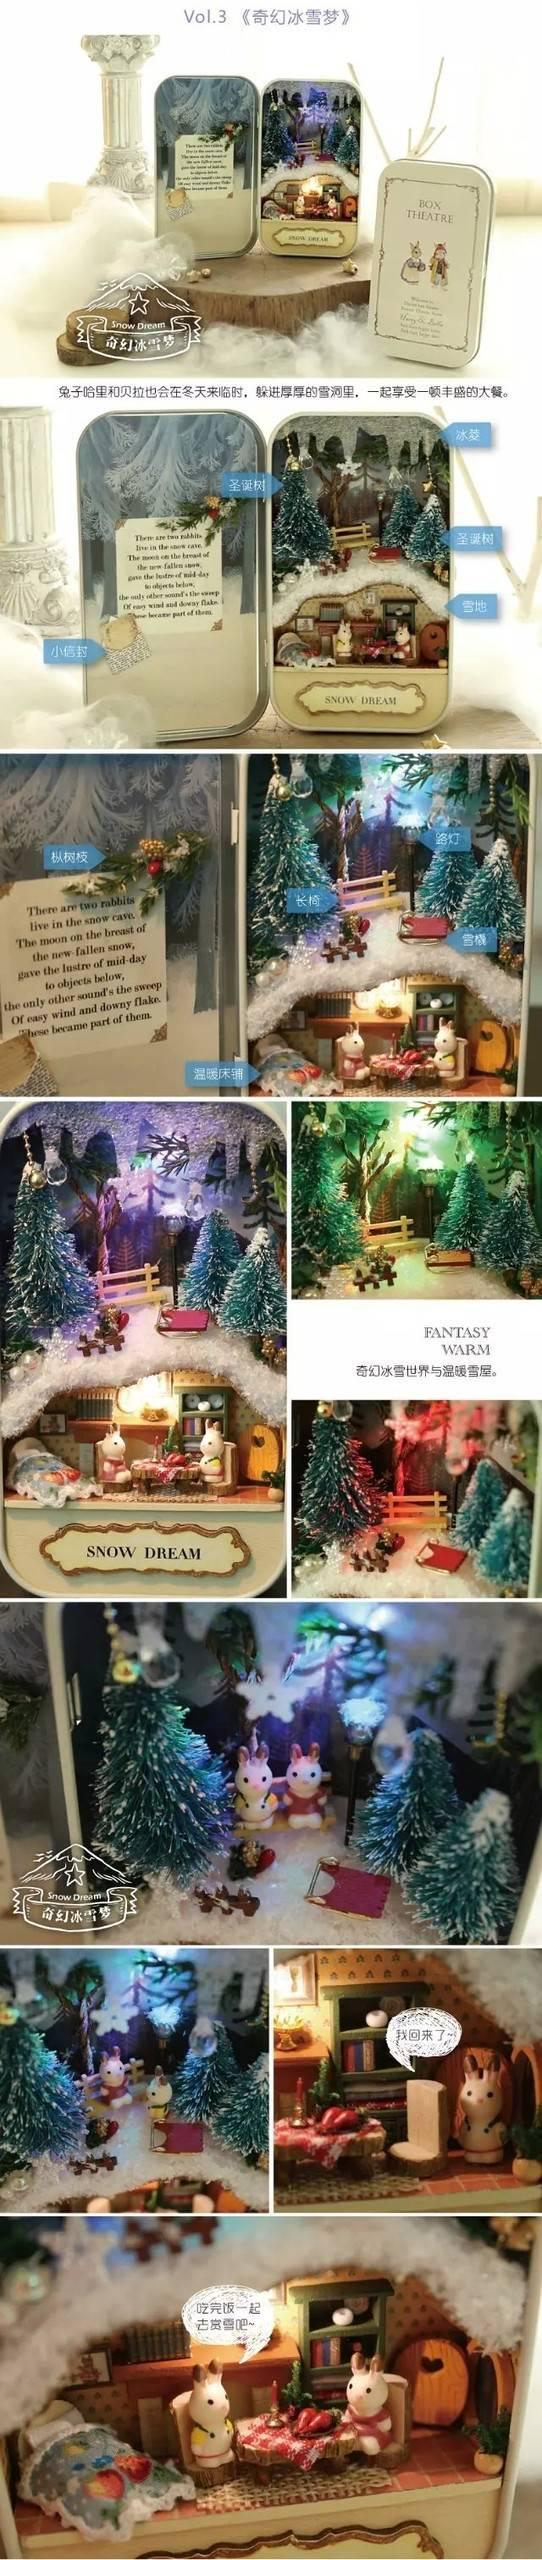 รูปภาพ:http://g03.a.alicdn.com/kf/HTB1aehhLpXXXXbtXXXXq6xXFXXX5/Doll-House-Diy-miniature-3D-Wooden-Puzzle-Dollhouse-miniaturas-Furniture-House-Doll-For-Birthday-Gift-Toys.jpg